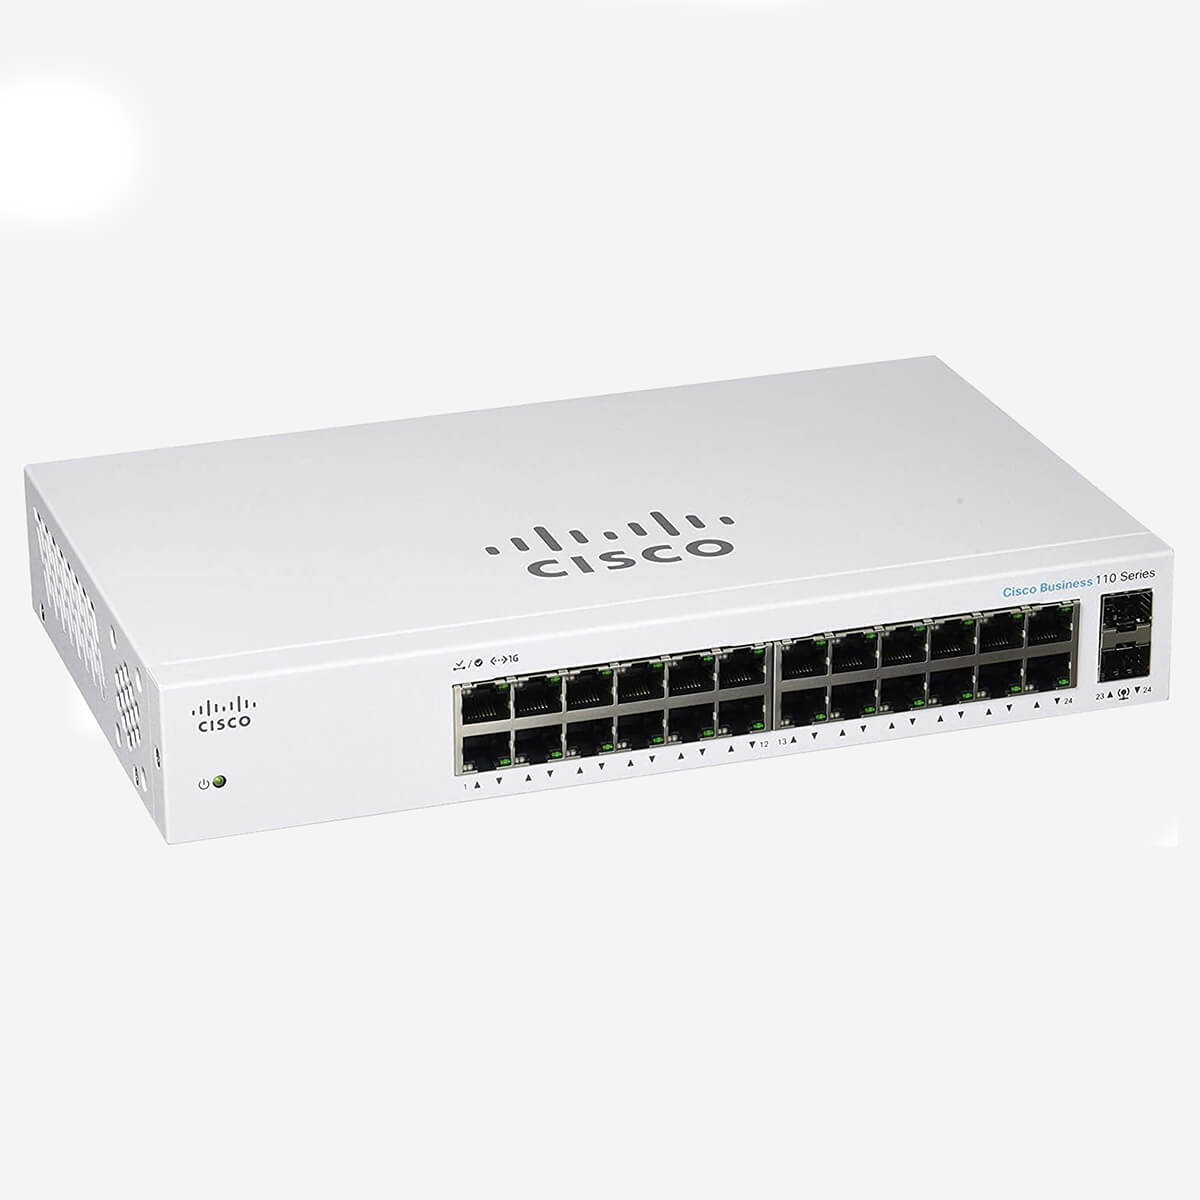 Cisco Business CBS110 24T EU